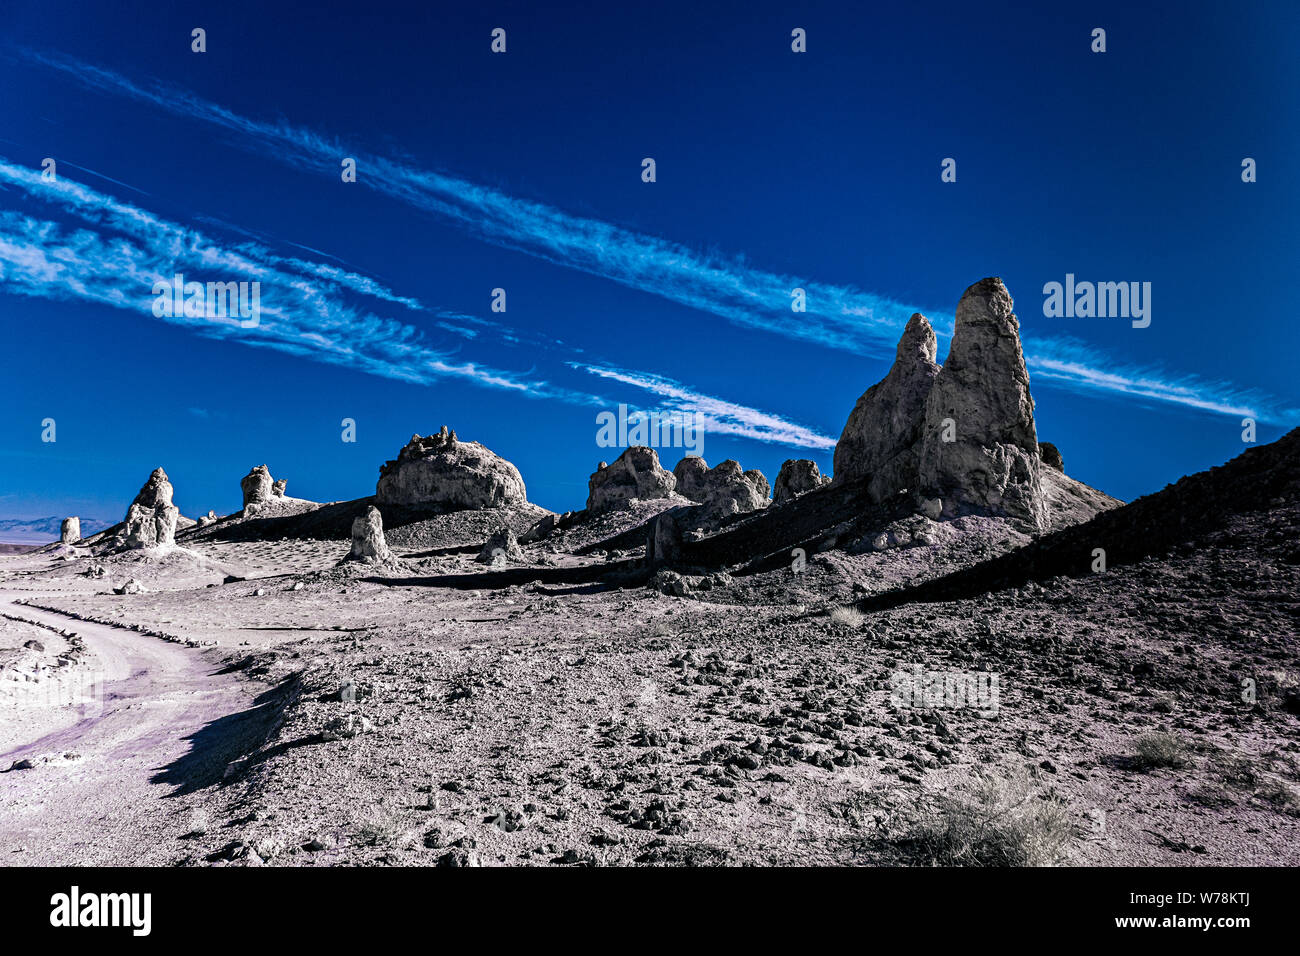 Route de terre menant au désert, paysage désertique aride à pinacles et de formations rocheuses en noir et blanc sous un ciel bleu avec des nuages blancs. Banque D'Images